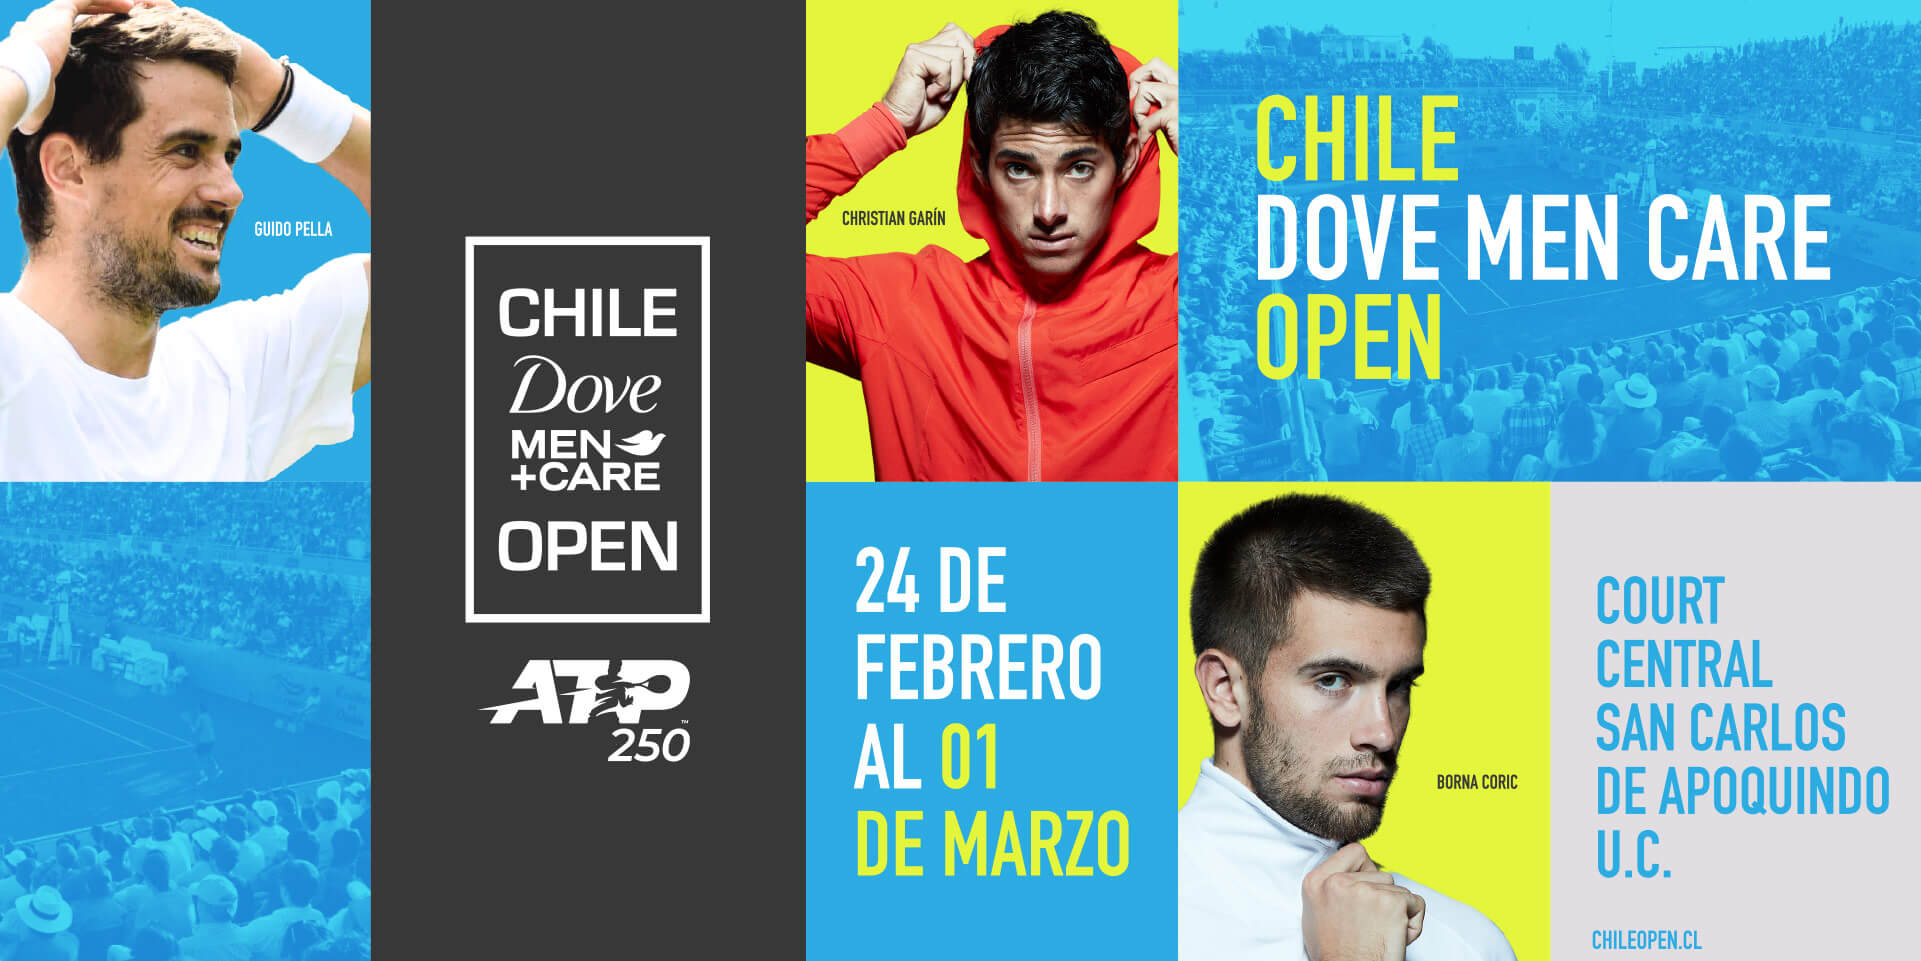 Chile Dove Men Care Open 2020 - Court Central San Carlos de Apoquindo U.C.